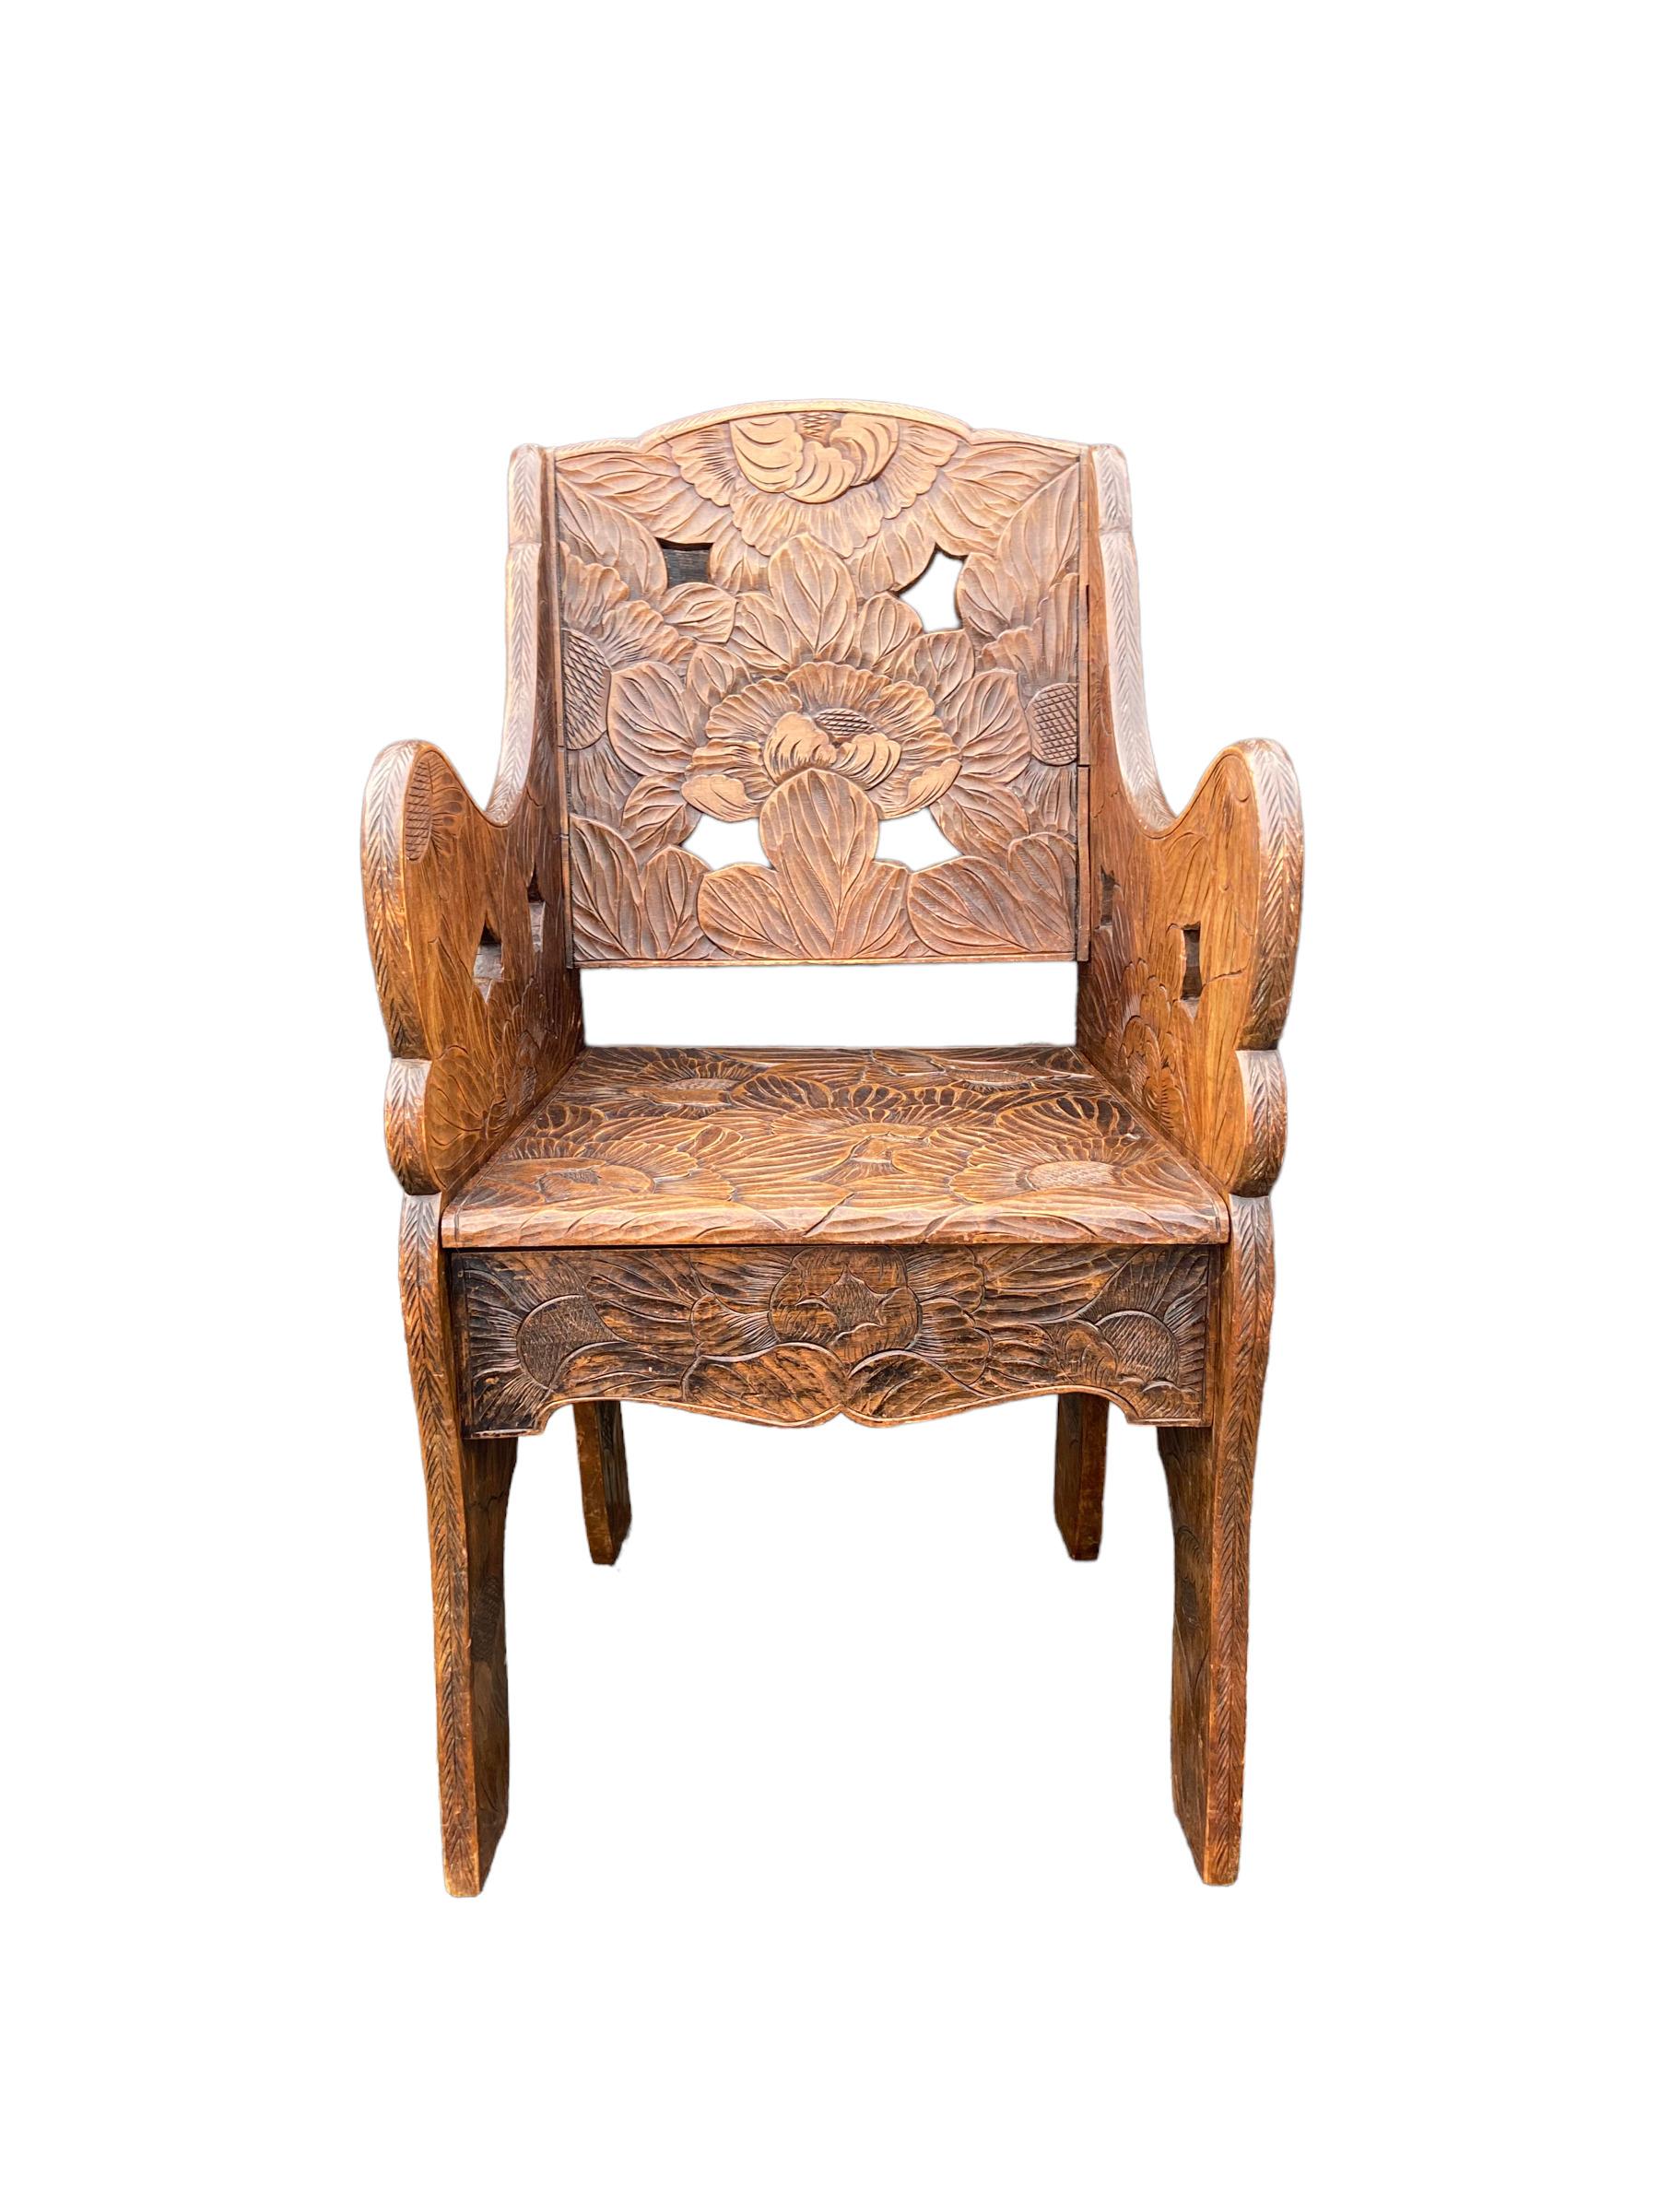 Chaise d'appoint sculptée à la main, fabriquée au Japon vers 1910 pour Liberty&Co (Royaume-Uni), en bois clair. (Cet objet Arts & Crafts est en très bon état mais présente des signes d'âge.

Mesures : hauteur du siège 45,5 cm, hauteur 93,5 cm,